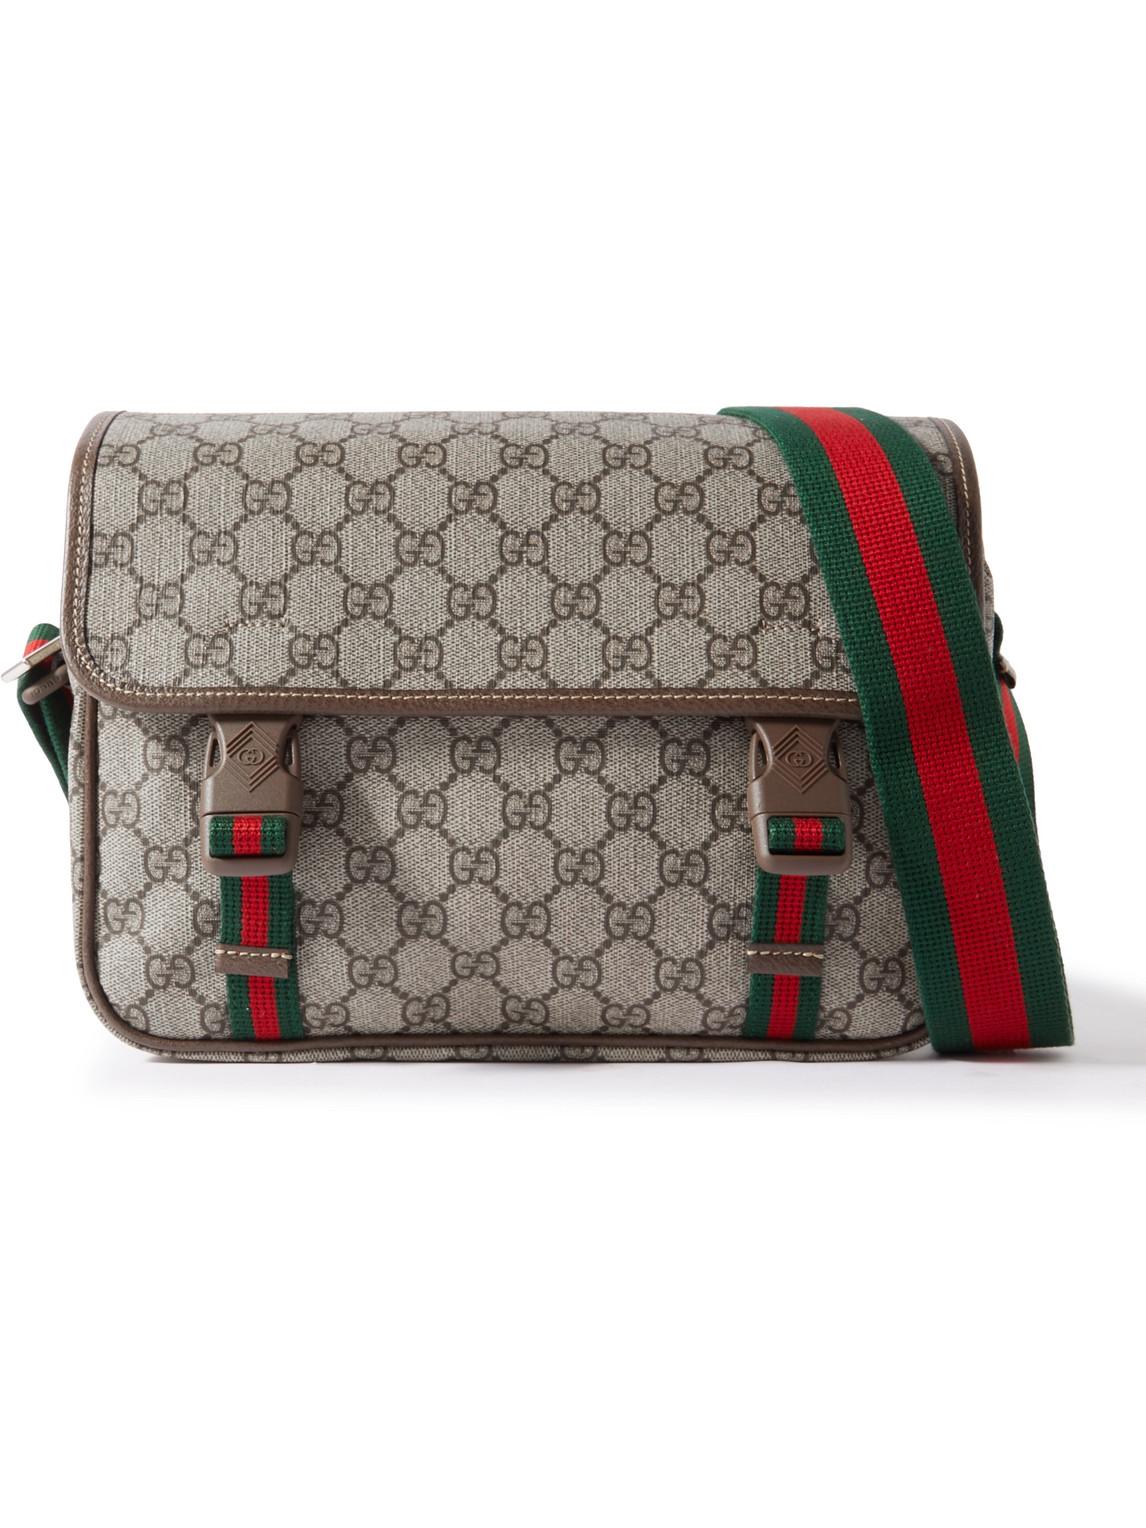 Gucci GG Supreme Leather-trimmed Monogrammed Coated-canvas Messenger Bag in  Natural for Men